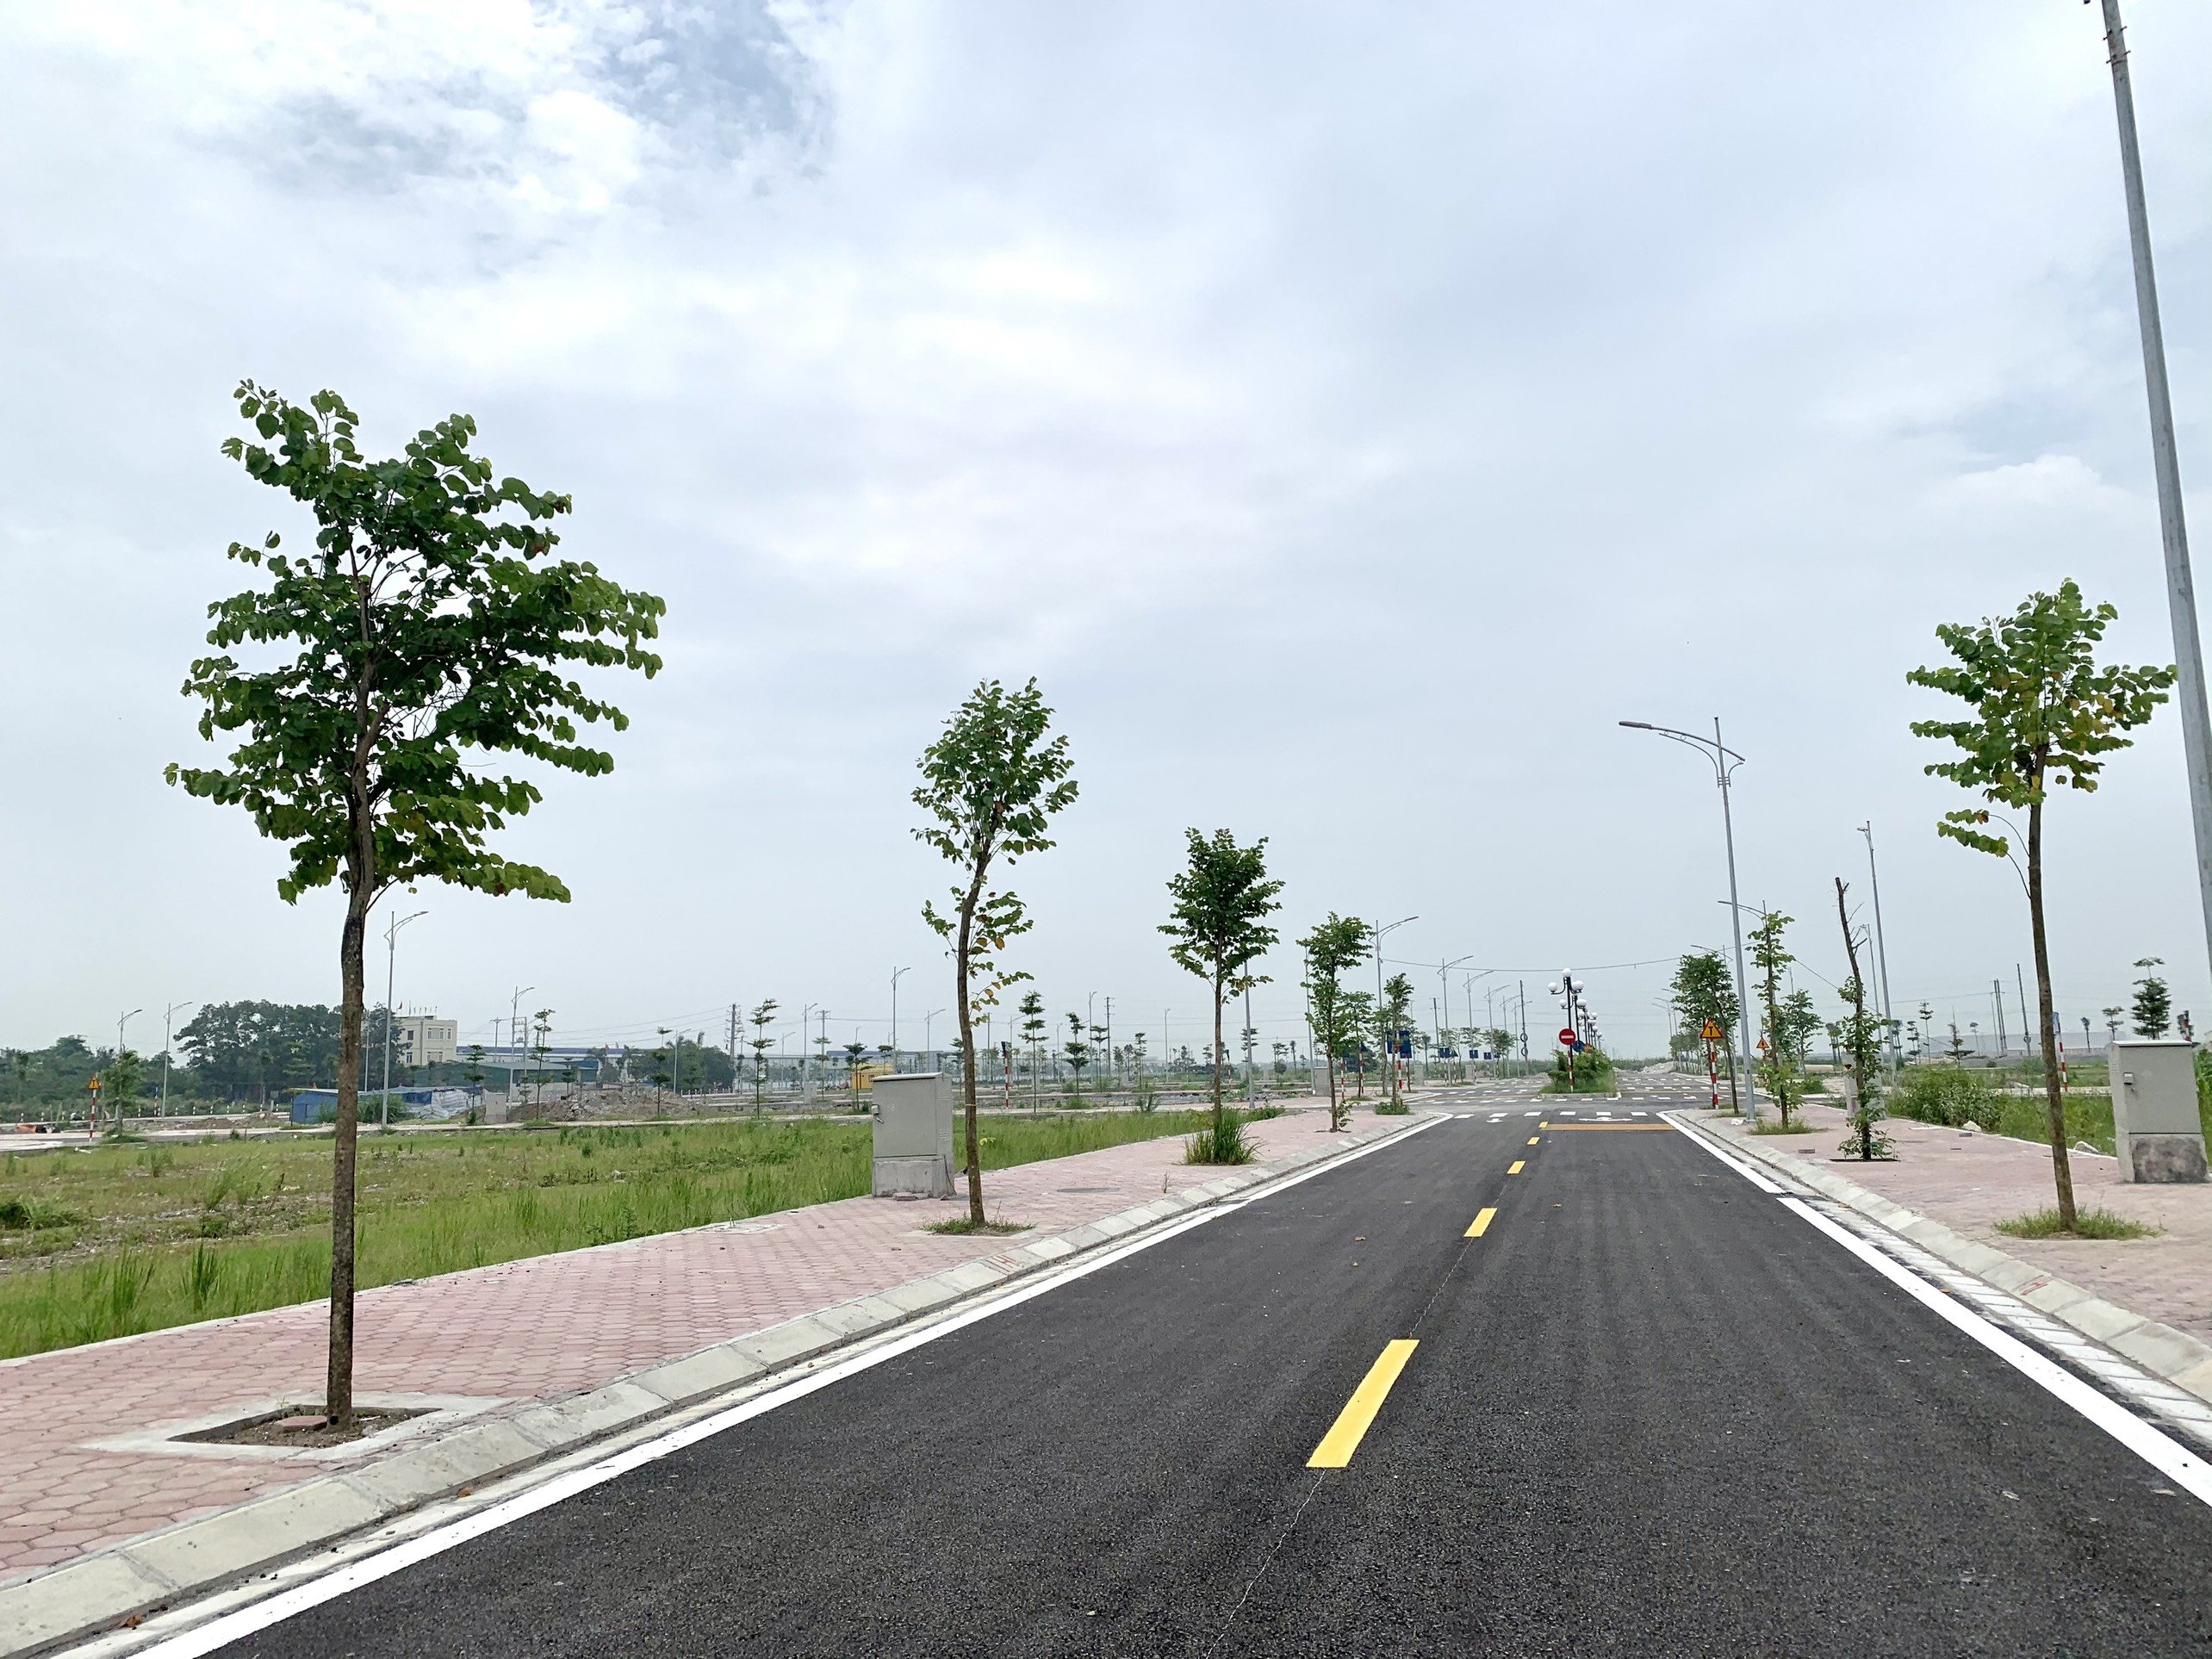 Ra mắt dự án 1/500 hot nhất miền Bắc hiện tại, nằm giữa 2 KCN rộng 1000 ha. Thuận Lợi để kinh doanh mua bán